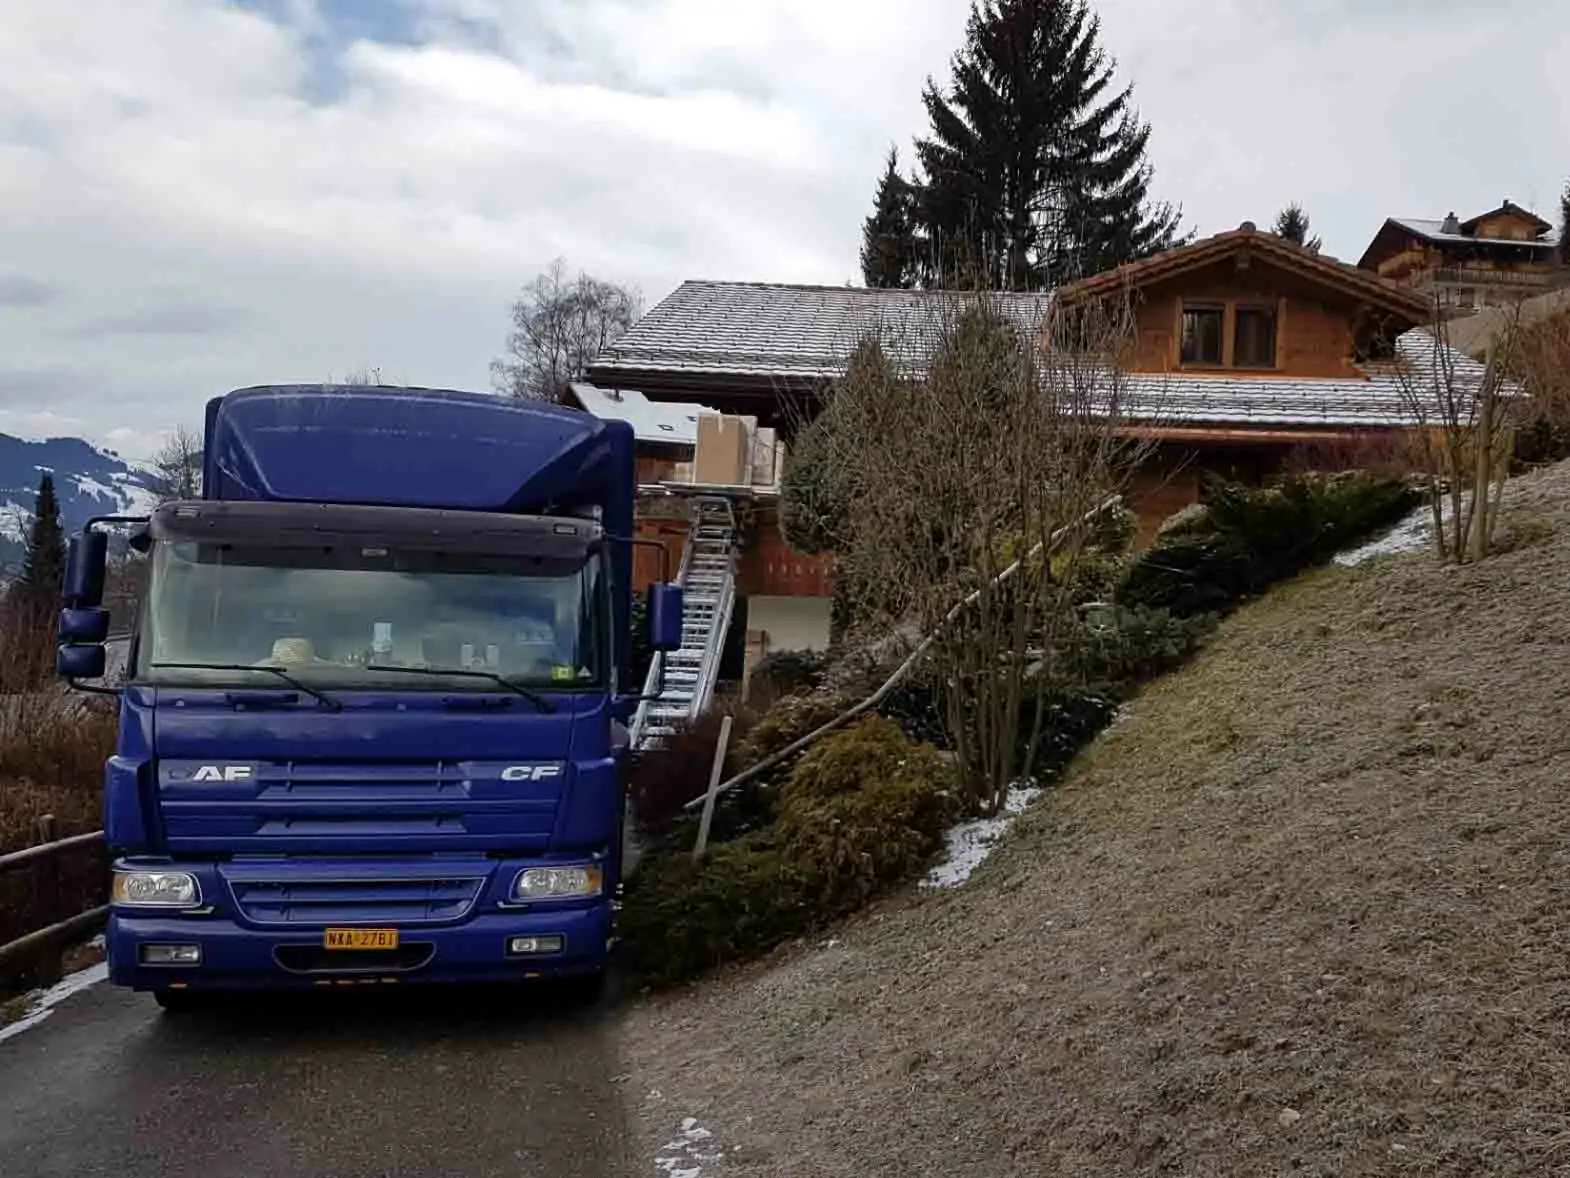 Μεταφορά - Μετακόμιση στην Ελβετία οικονομικά